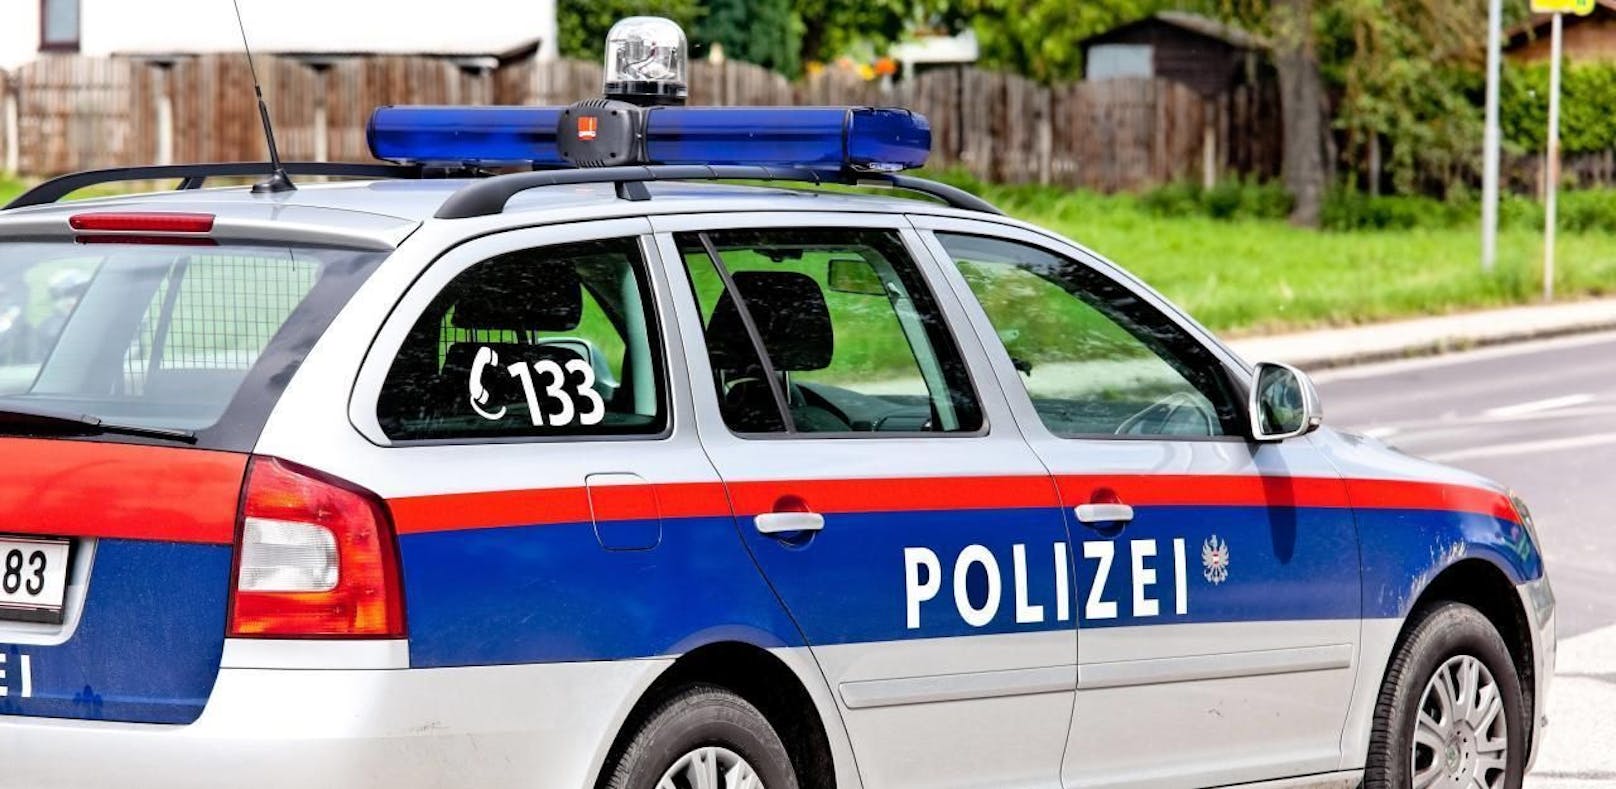 Die Polizei nahm den 20-Jährigen aus Rumänien fest